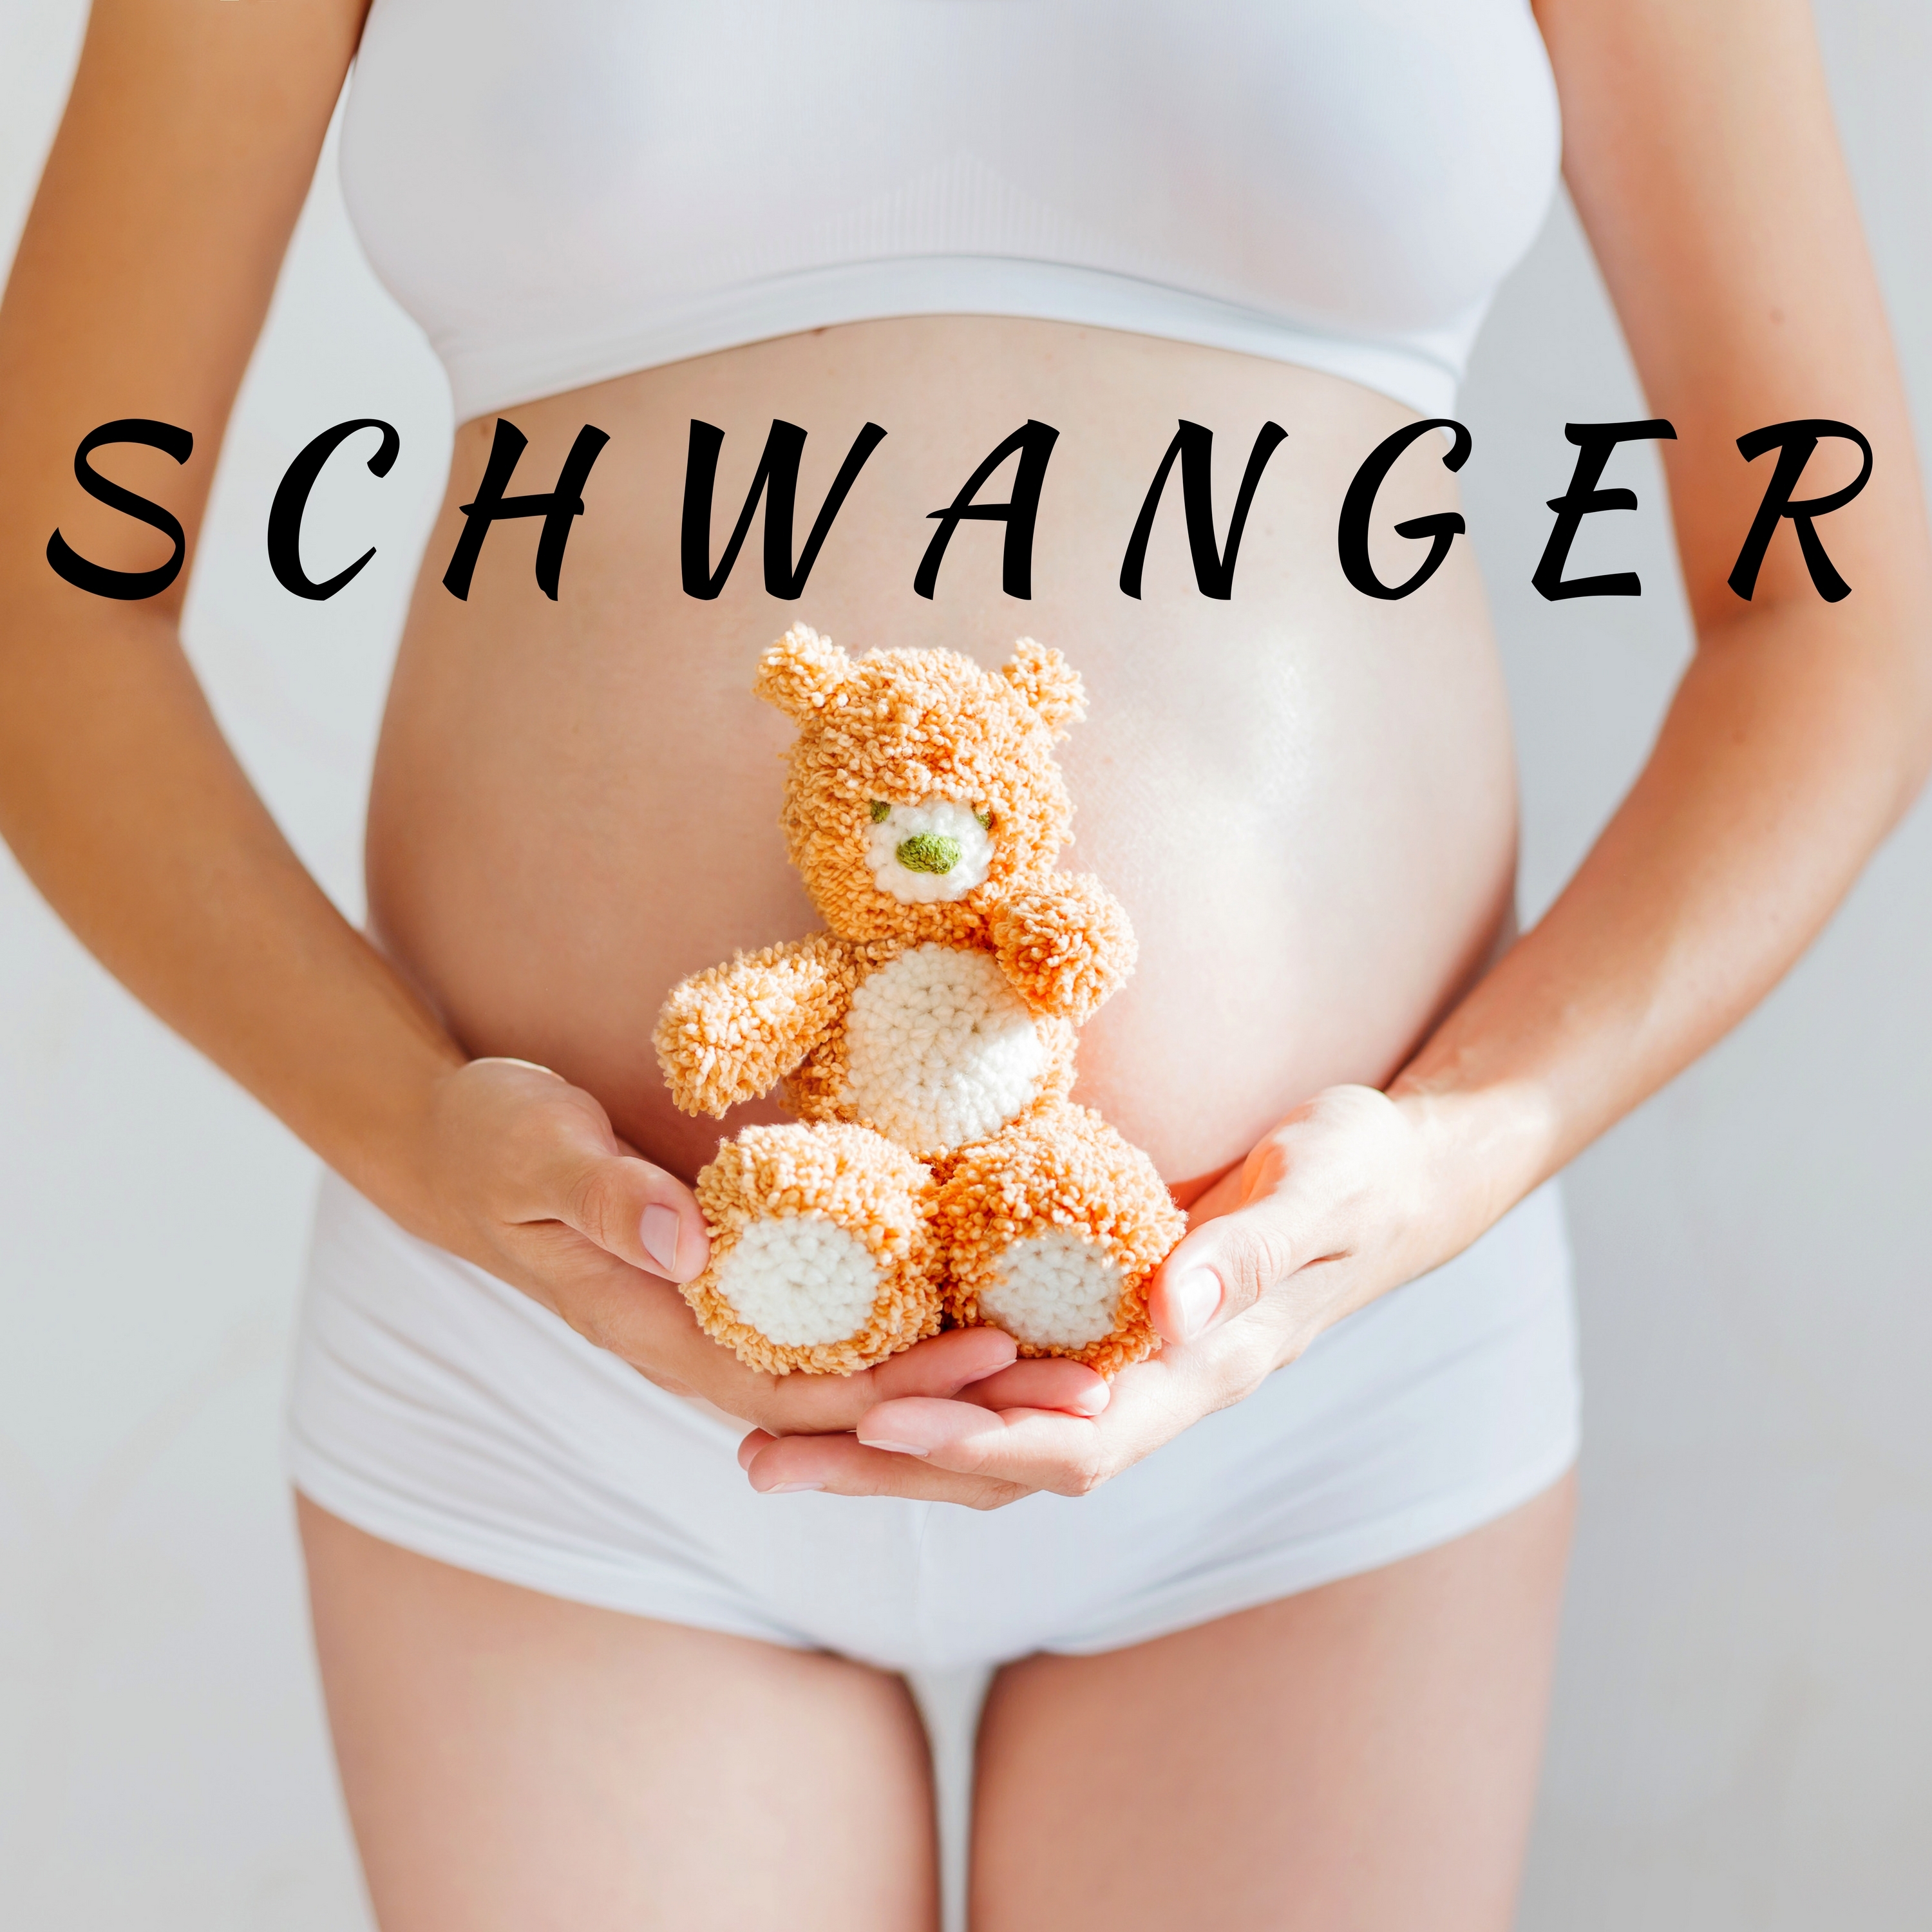 Schwanger - Musik für Schwangerschaft, Familienmusik, Musik für Baby